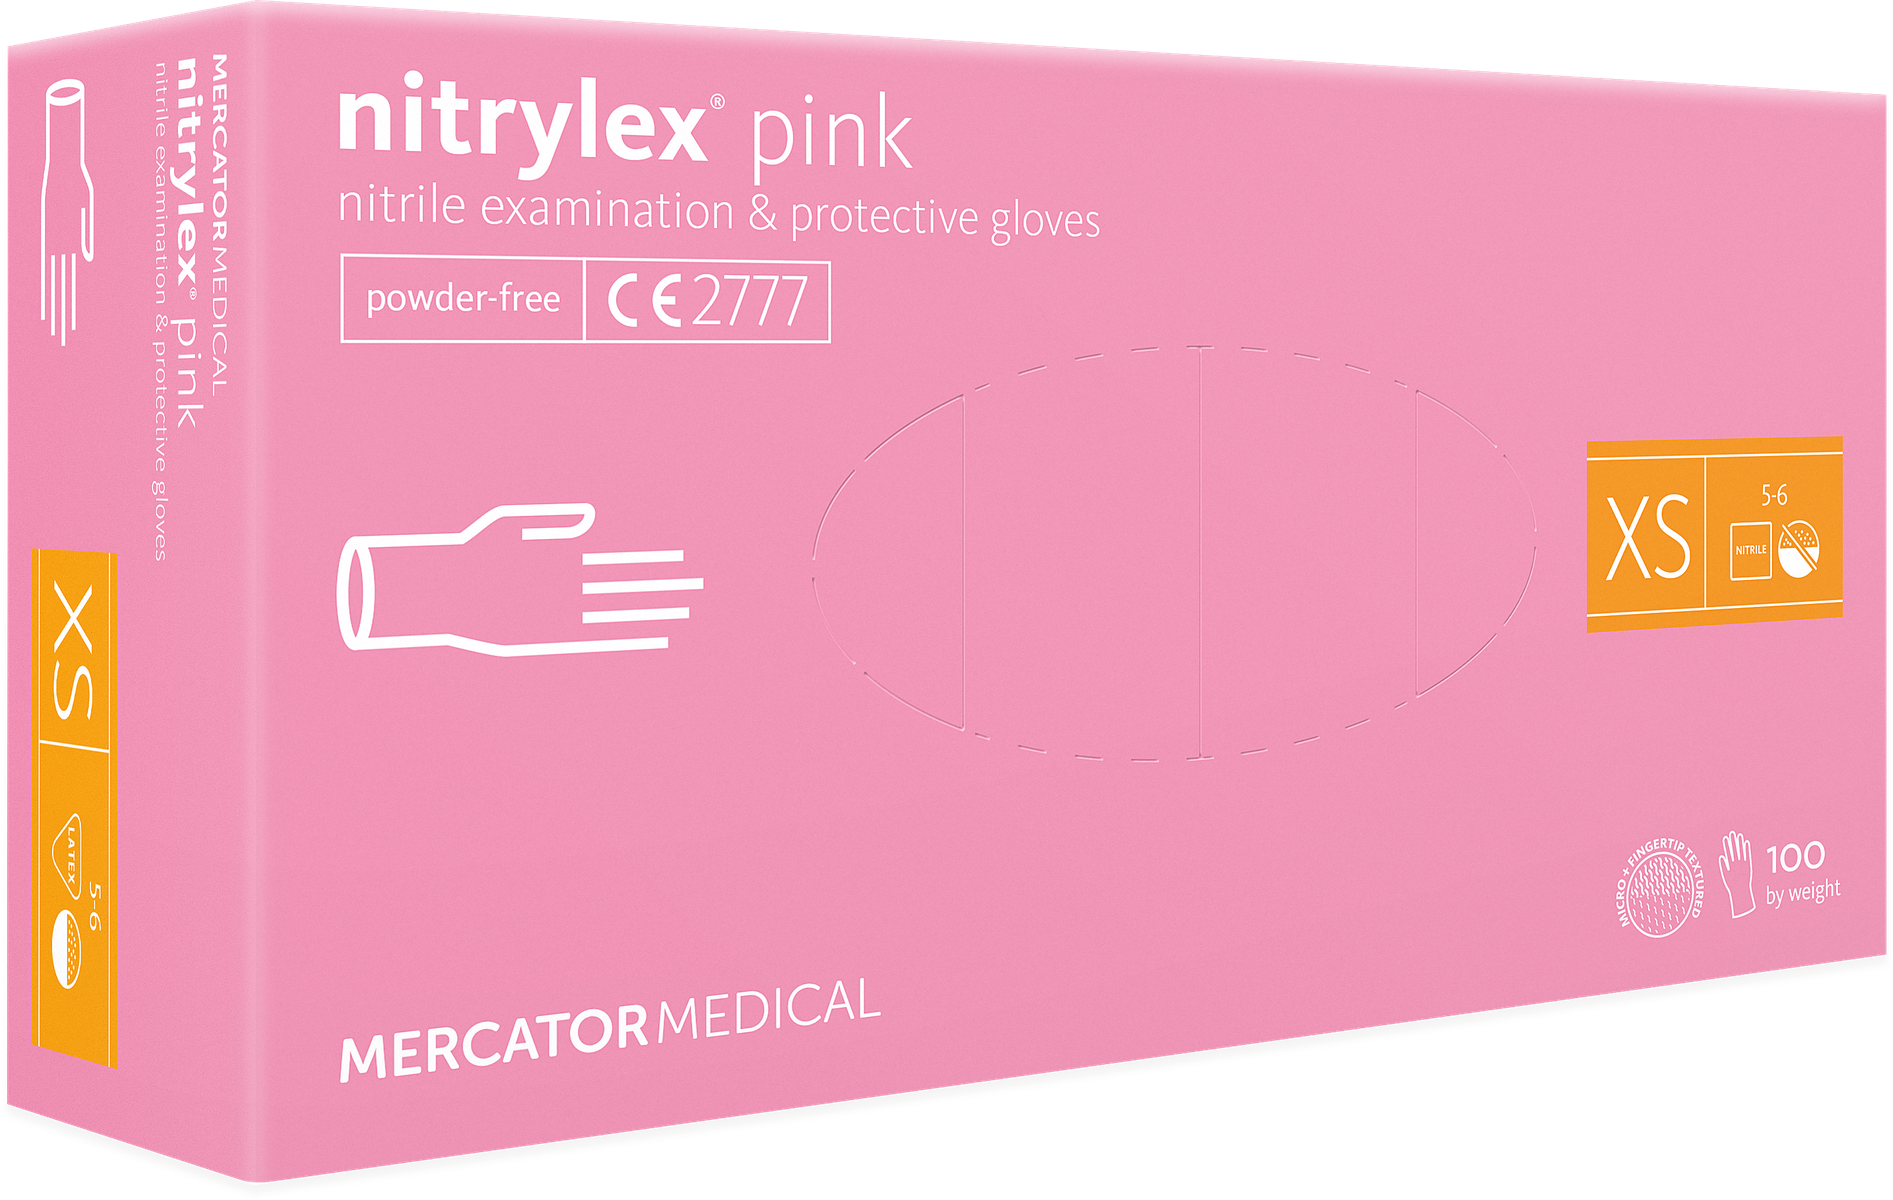 Nitrylowe rękawiczki kosmetyczne różowe - opakowanie 100 sztuk. Jednorazowe rękawice nitrylowe, idealne do zabiegów kosmetycznych i fryzjerskich lub do SPA.